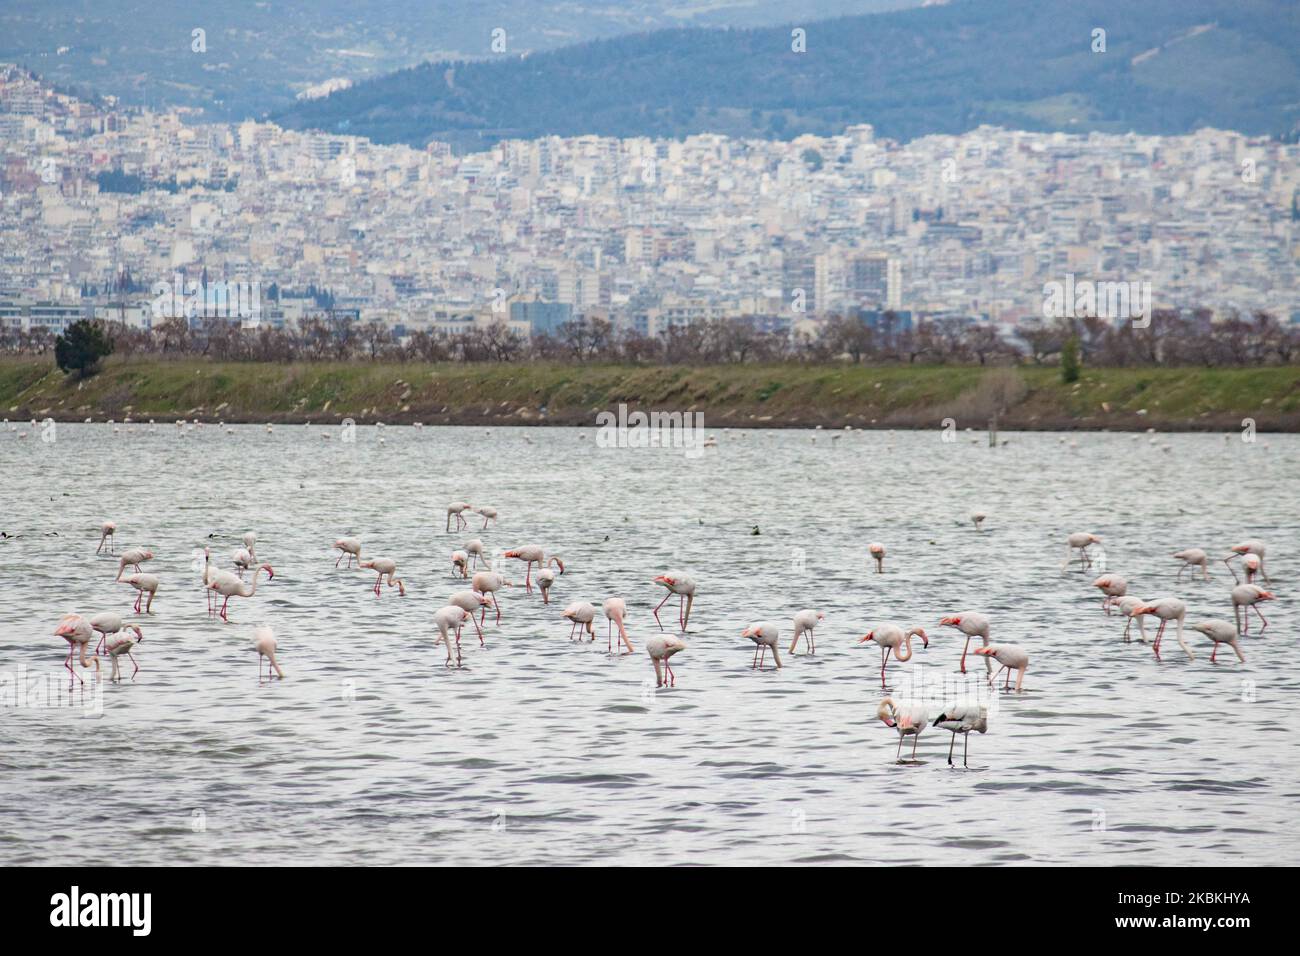 Un troupeau de flamants roses, des oiseaux de la famille des Phénicoptériformes comme vu dans le lagon de Kalochori avec la ville de Thessalonique en arrière-plan. Les colonies de flamants roses vivent ici dans les zones humides comme un arrêt intermédiaire sur leur route de migration, qui fait partie du parc national du delta d'Axios dans le nord de la Grèce. Le parc national du delta d'Axios près de la ville de Thessalonique en Grèce se compose de 4 rivières Axios, Galikos, Loudias et Aliakmonas, se trouvent 295 espèces d'oiseaux, 350 espèces de plantes, 40 espèces de mammifères, 18 espèces de reptiles, 9 espèces d'amphibiens, 7 espèces d'invertébrés. 25 mars 2020 (photo de Nicolas ECON Banque D'Images